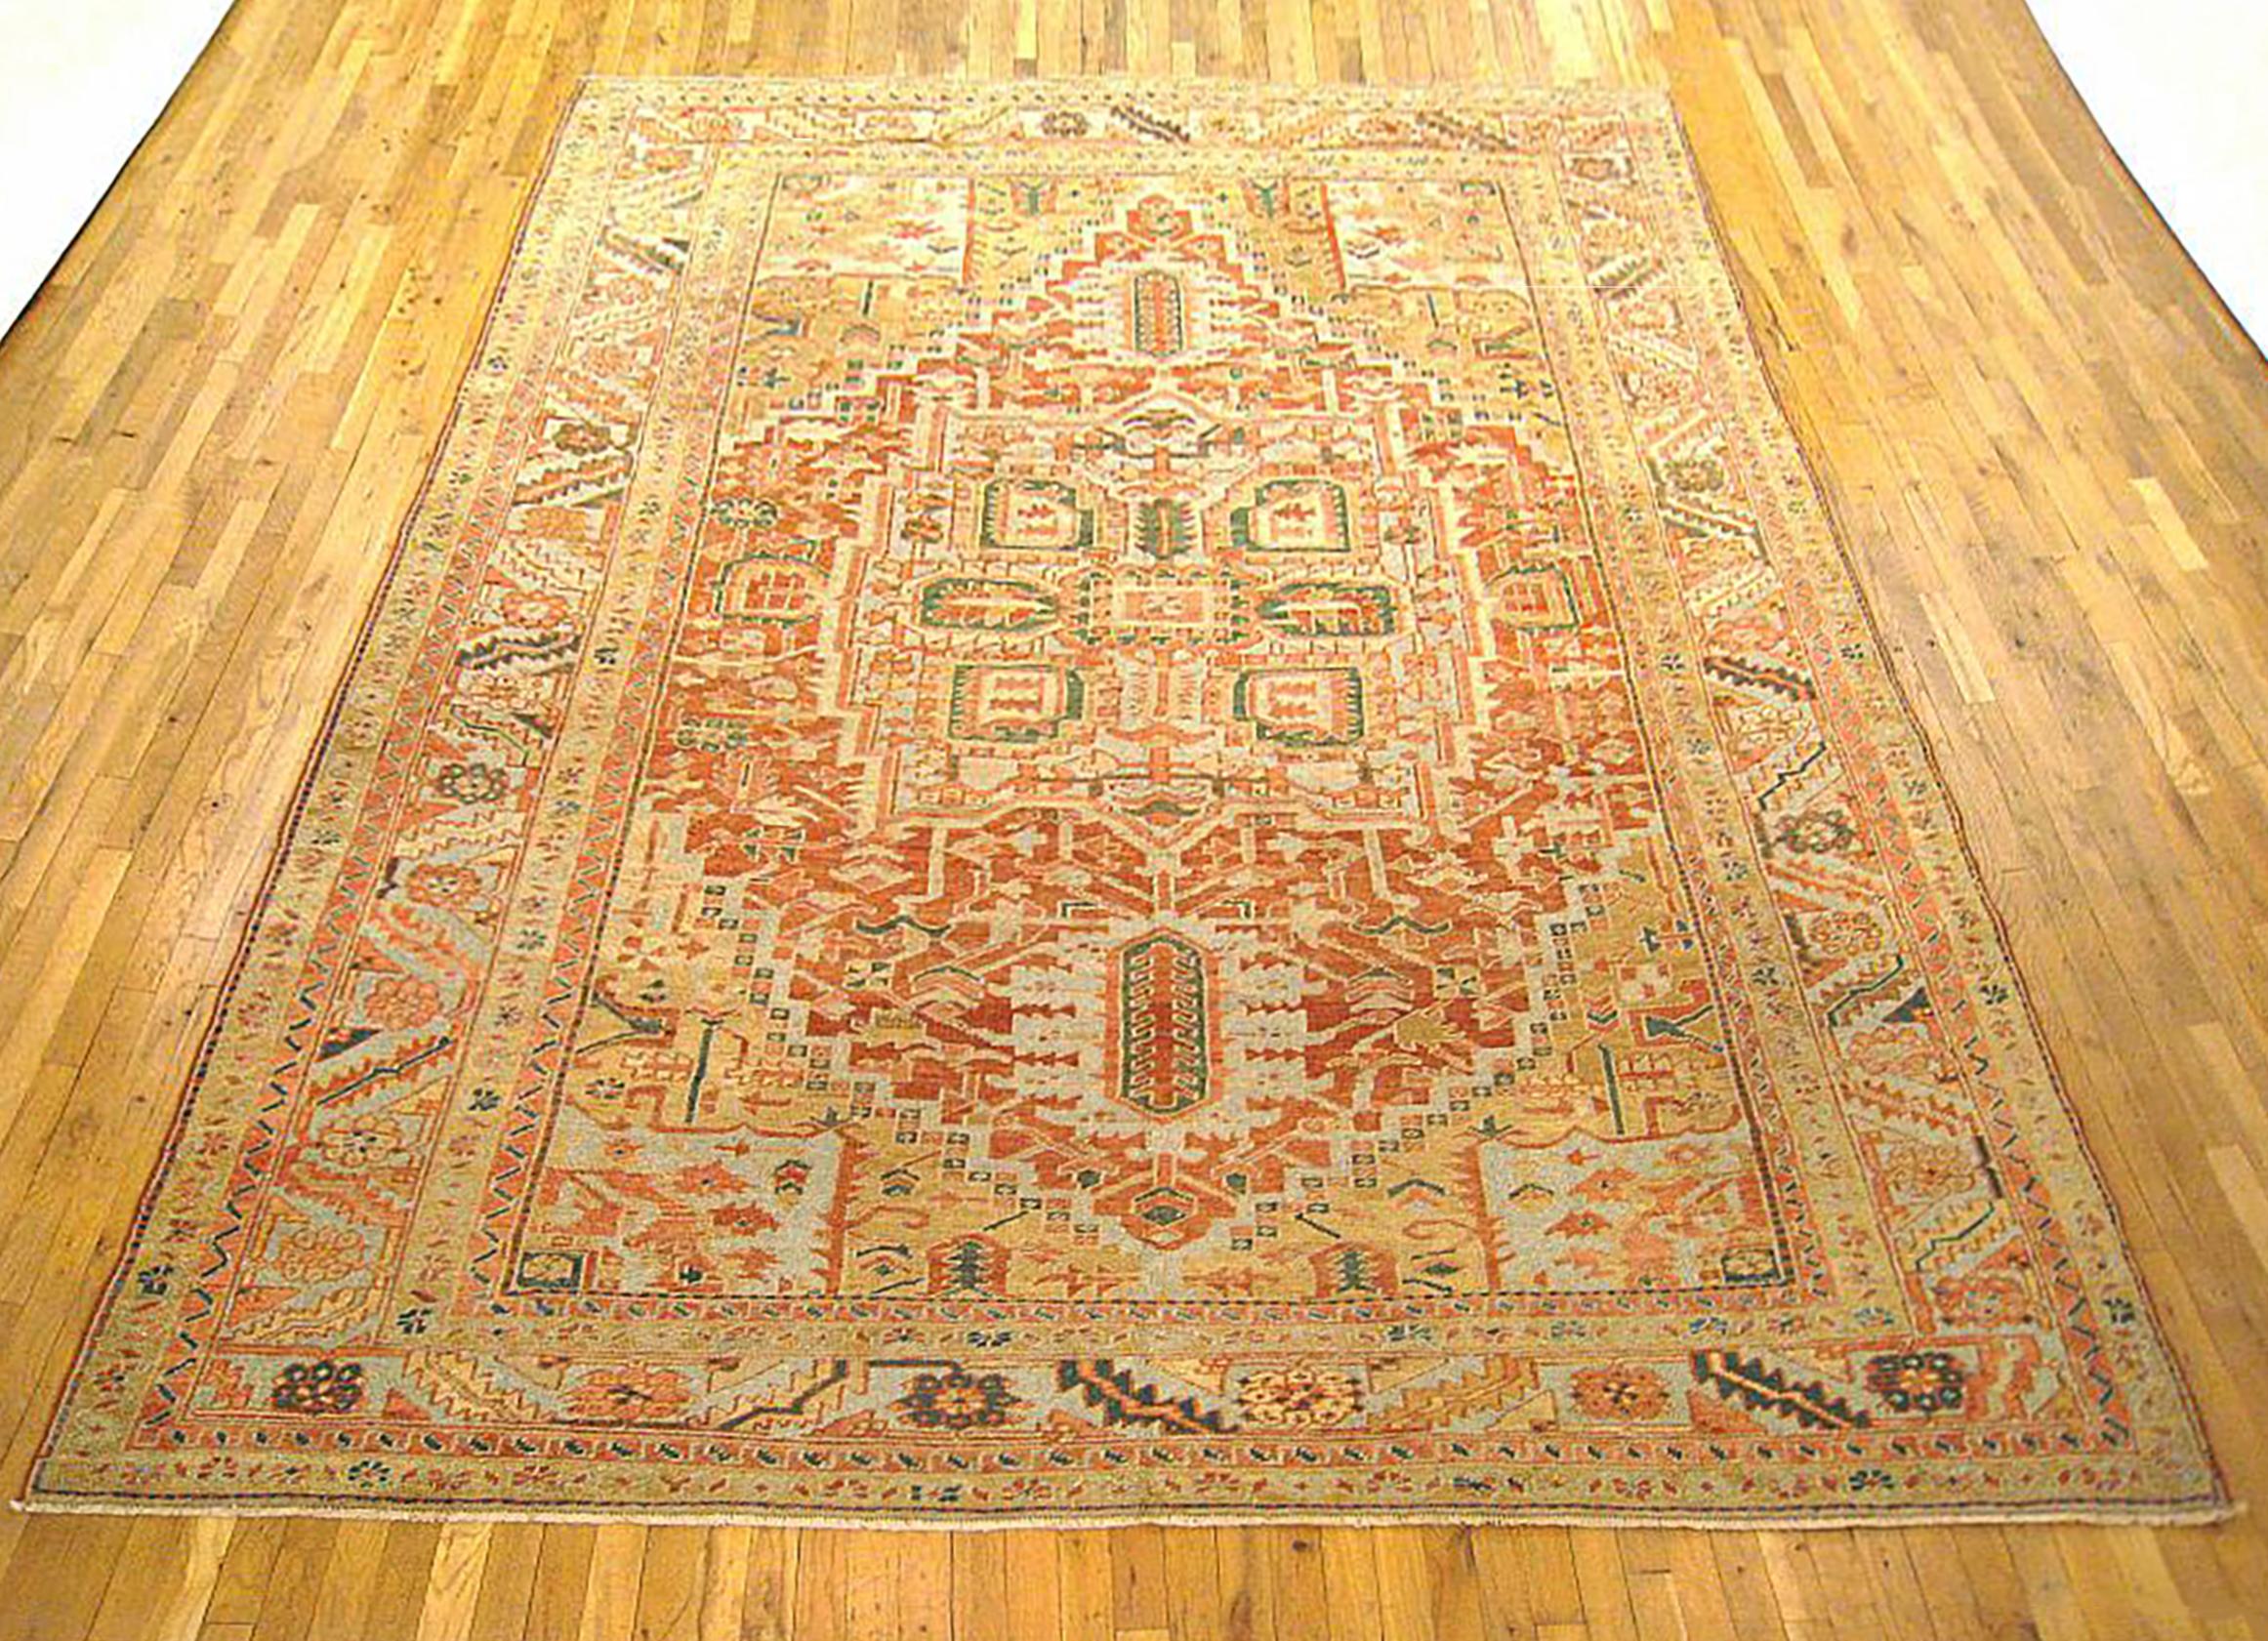 Antique Persian Heriz oriental rug, room size

An antique Persian Heriz oriental rug, size 11'3